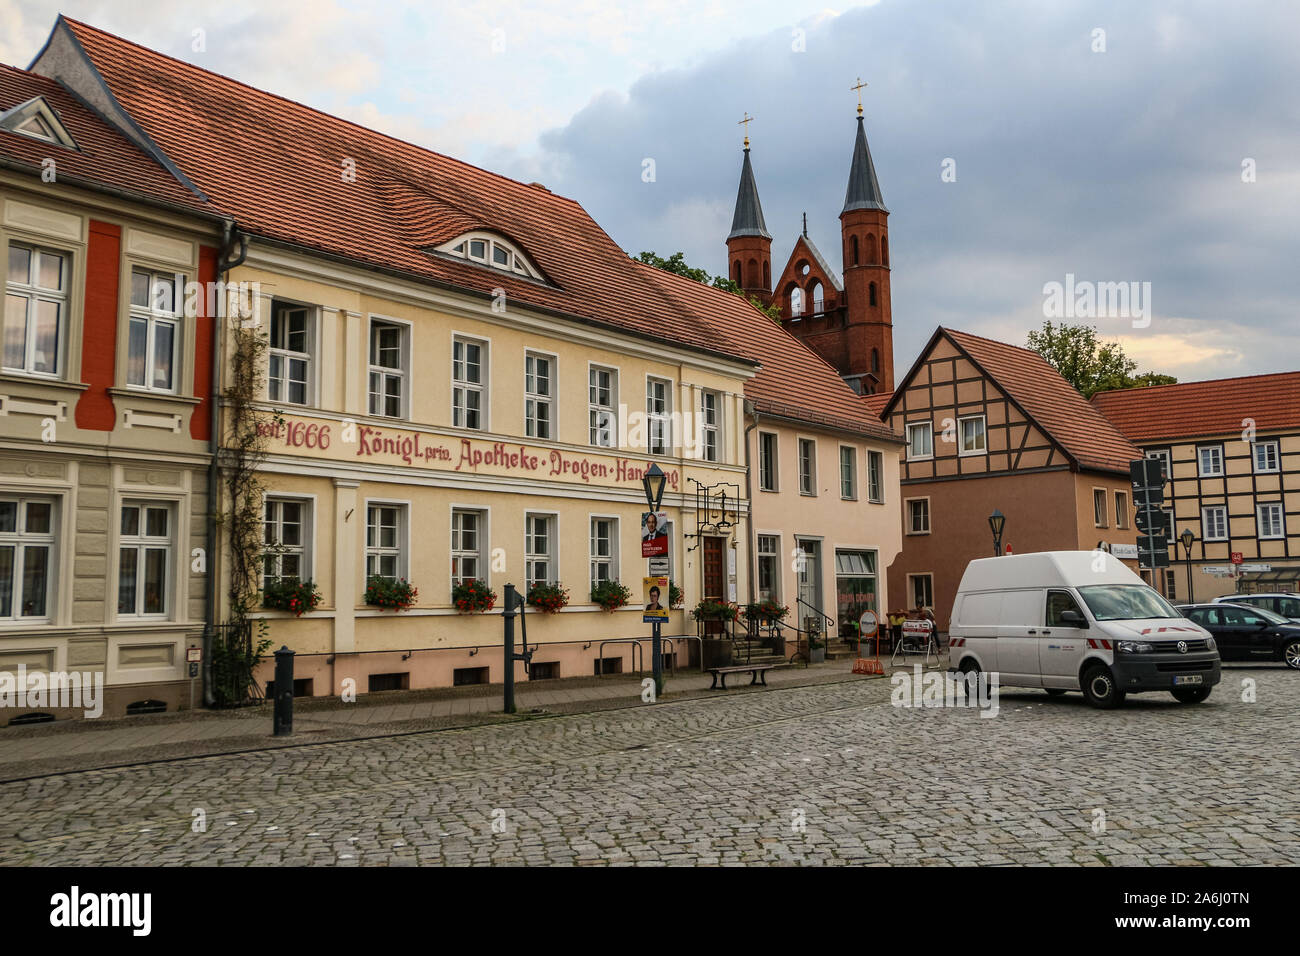 Allgemeine Ansicht des alten städtischen Gebäude ist in Kyritz, Brandenburg, Deutschland am 1. August 2019 © Michal Fludra/Alamy Live Nachrichten gesehen Stockfoto